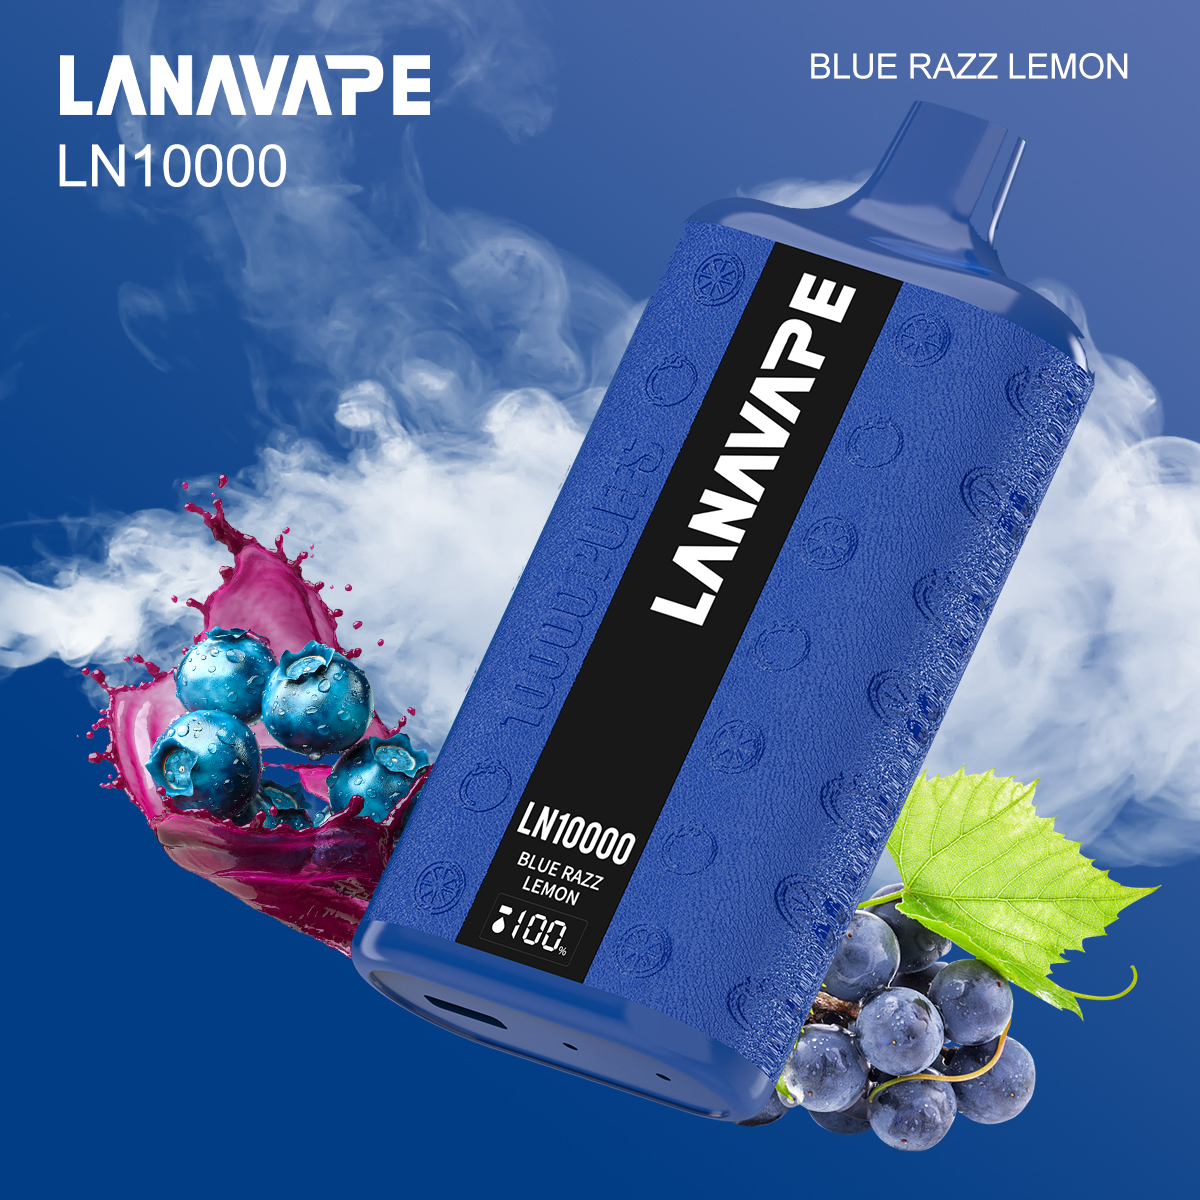 LN10000-blue razz lemon.jpg